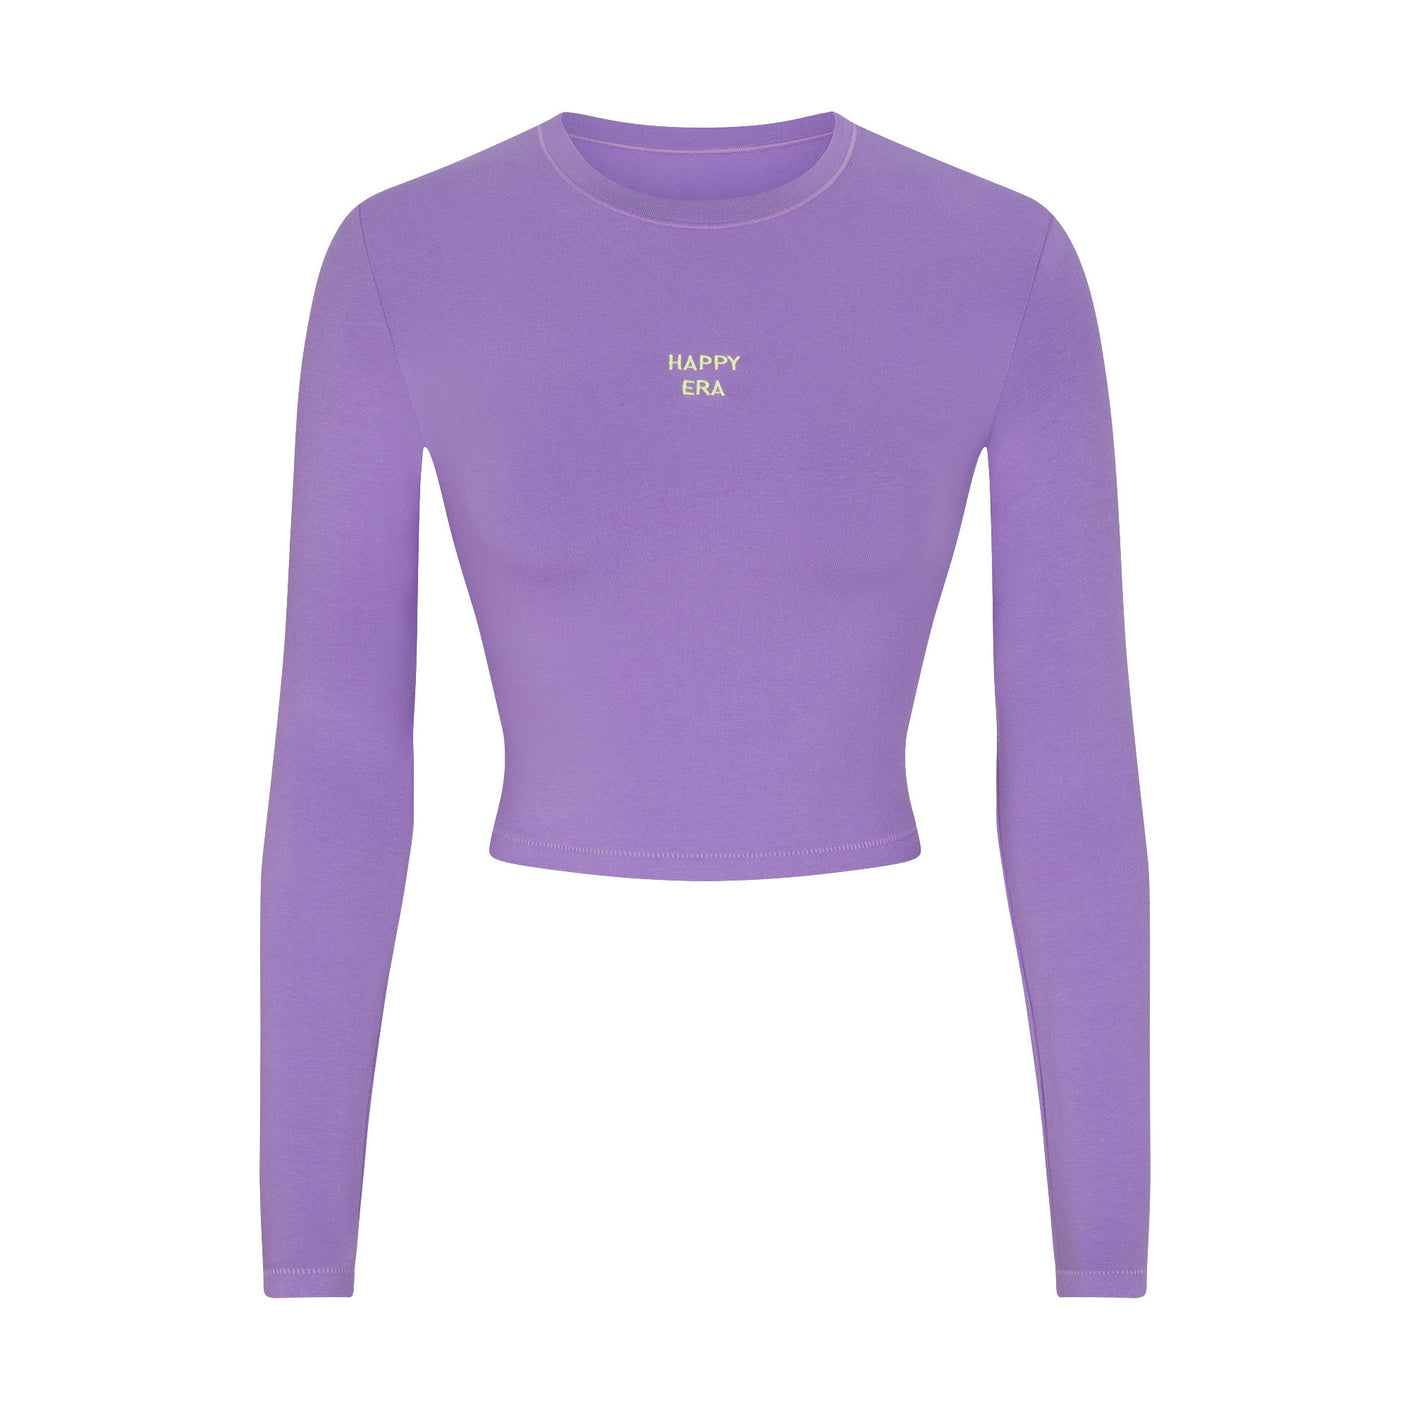 SKIMS, Tops, Skims Ultra Violet Tshirt Bodysuit Xs